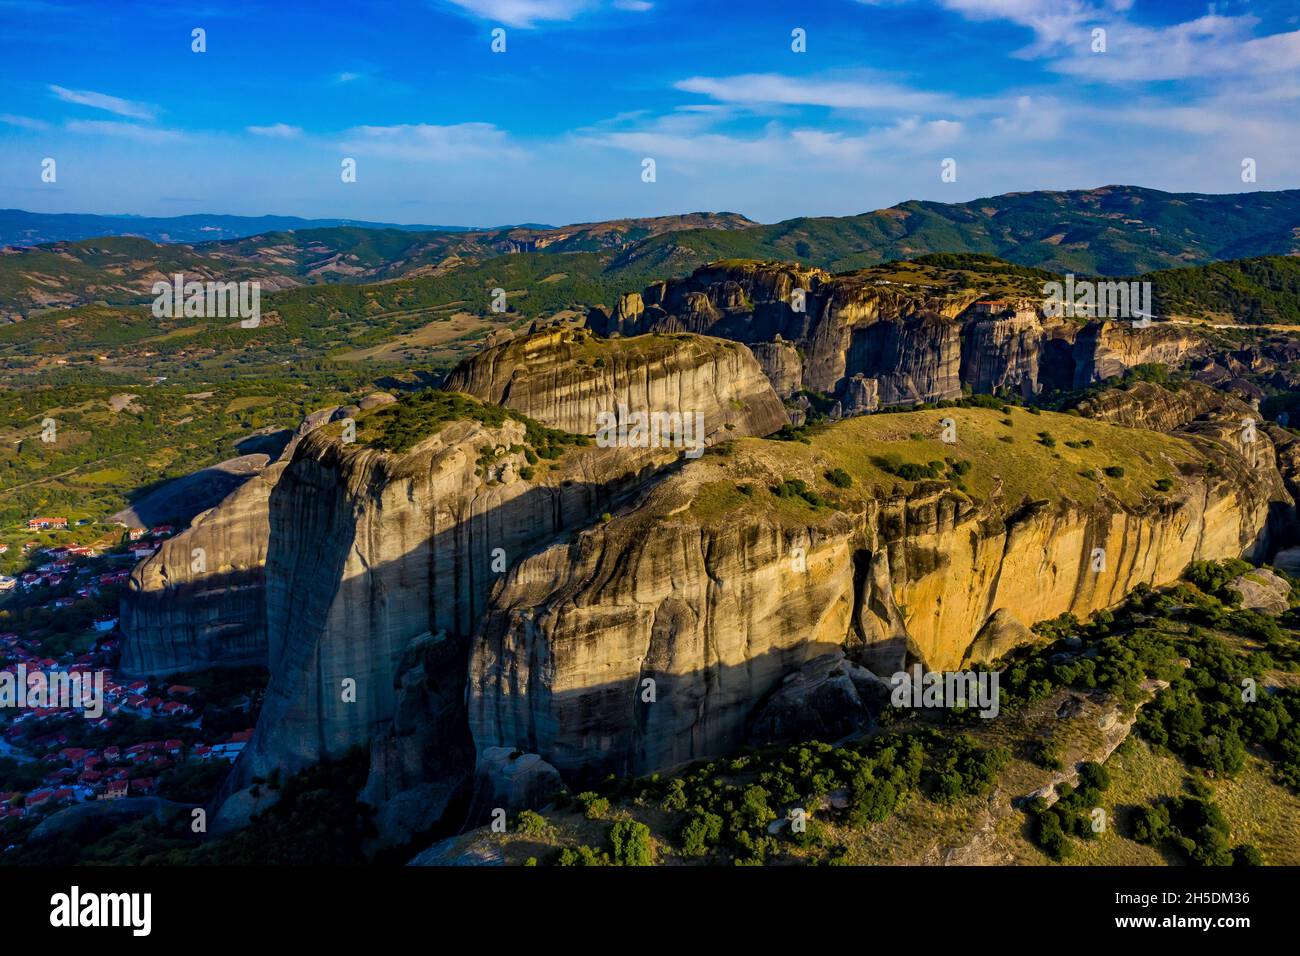 Meteora Klöster aus der Luft | Luftbilder von den Meteora Klöstern in Griechenland | Meteora monasteries in Greece from above Stock Photo